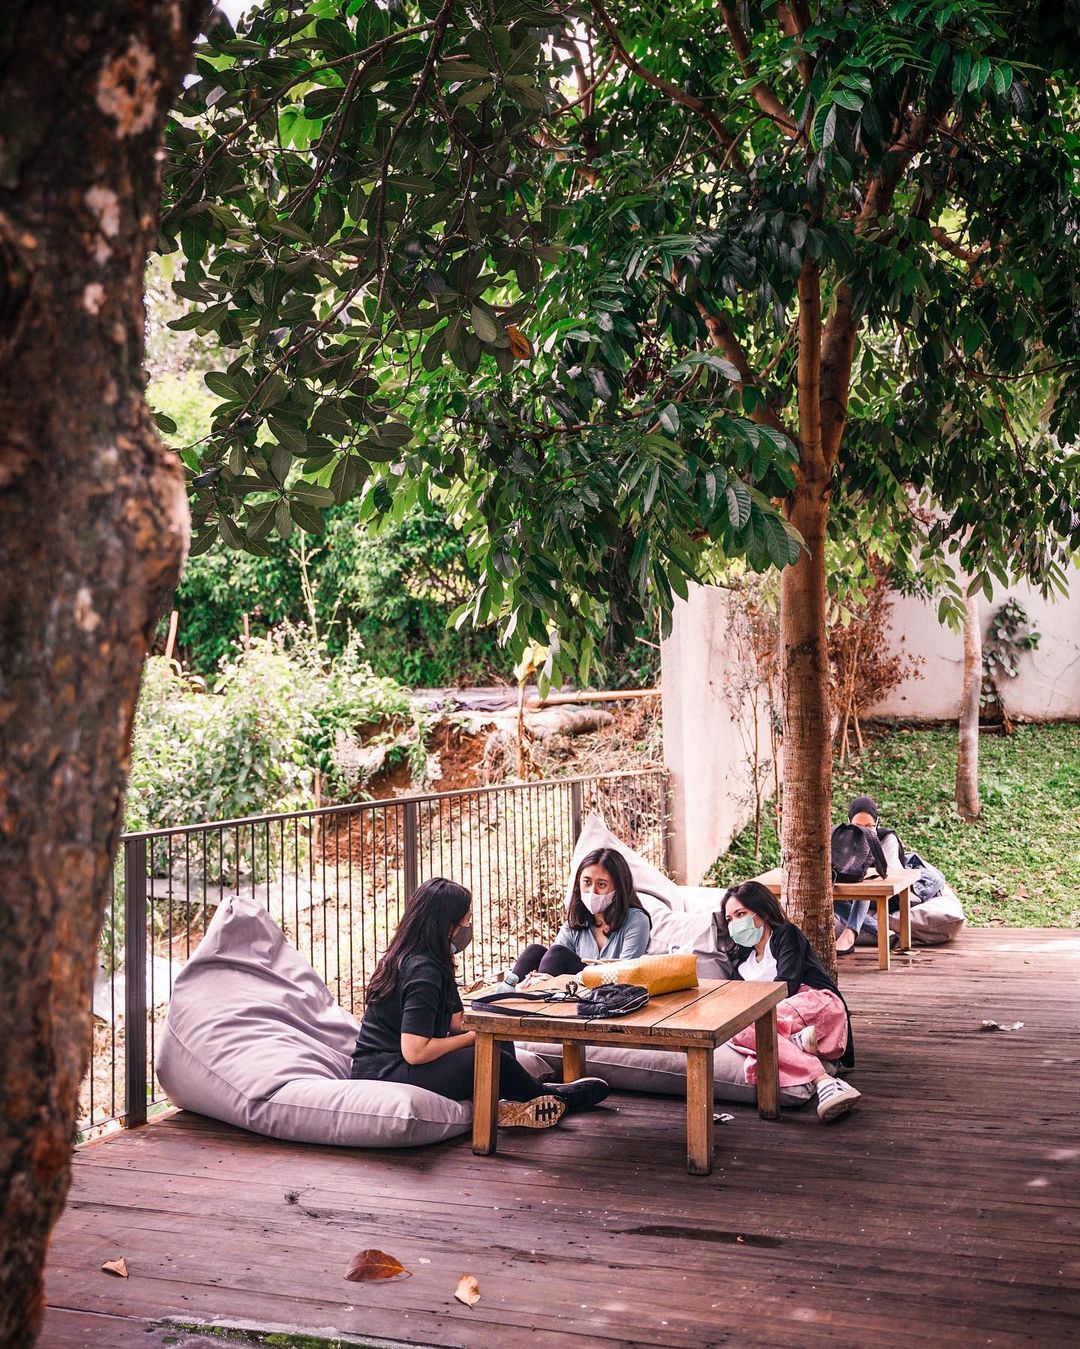 Jam Buka Halojae Cafe Bandung Image From @exploreatory